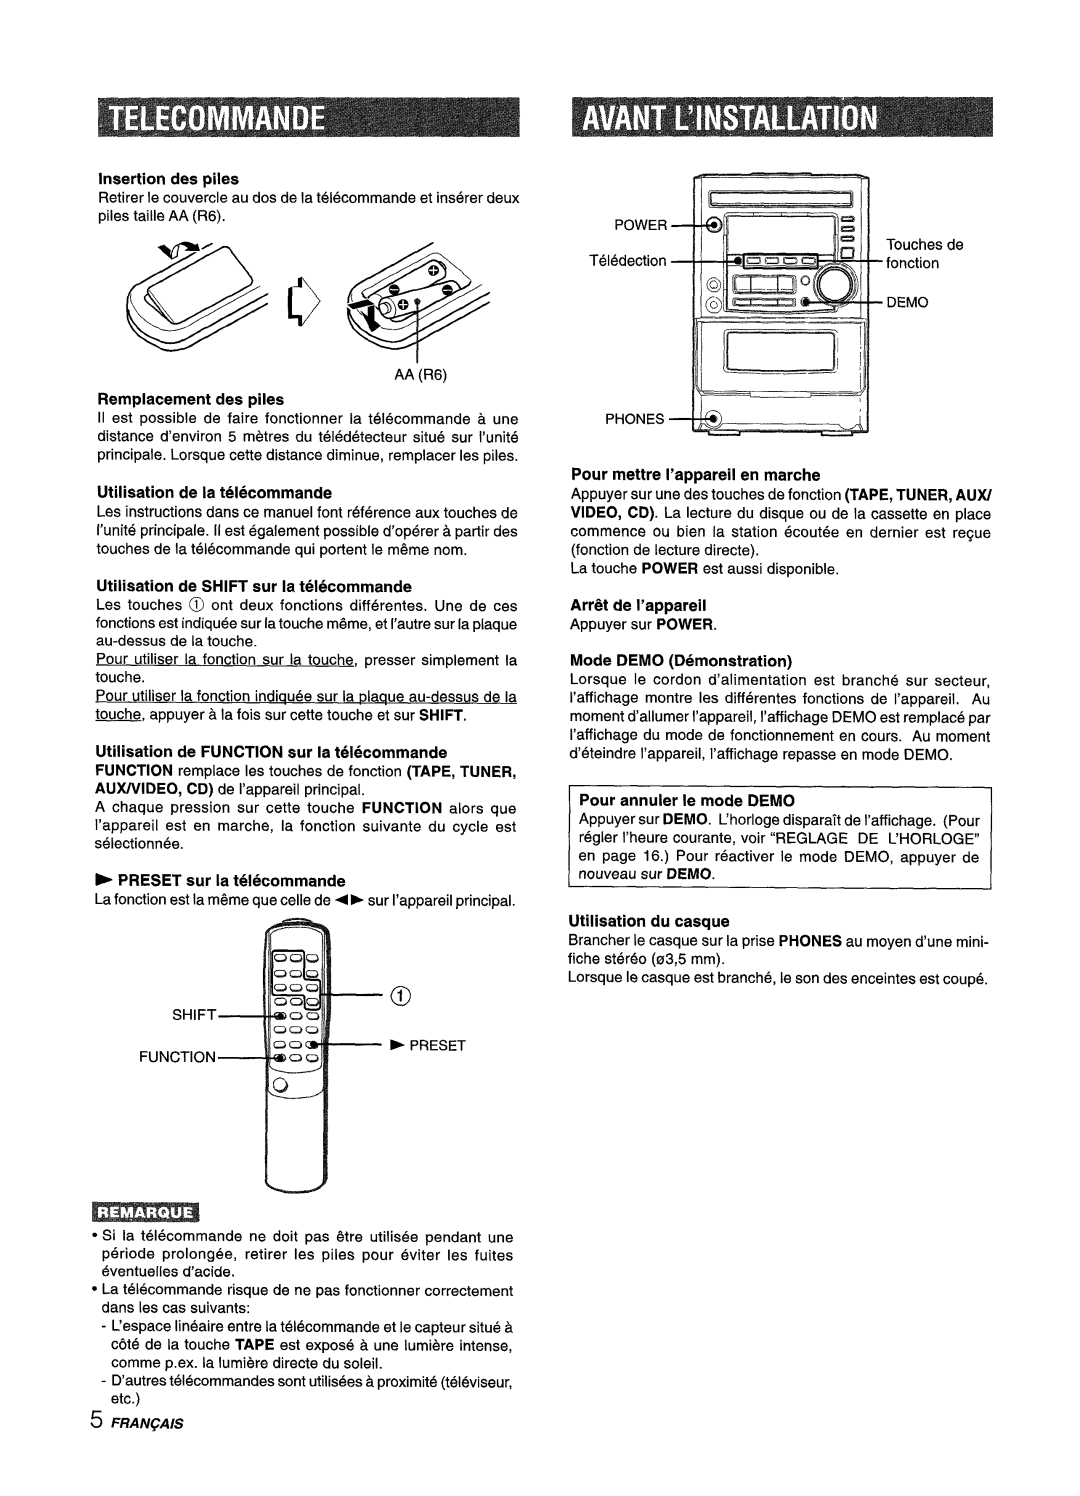 Aiwa XM-M25 manual Insertion des piles, Replacement des piles, Utilisation de la telecommande, ~ PRESET sur la telecommande 